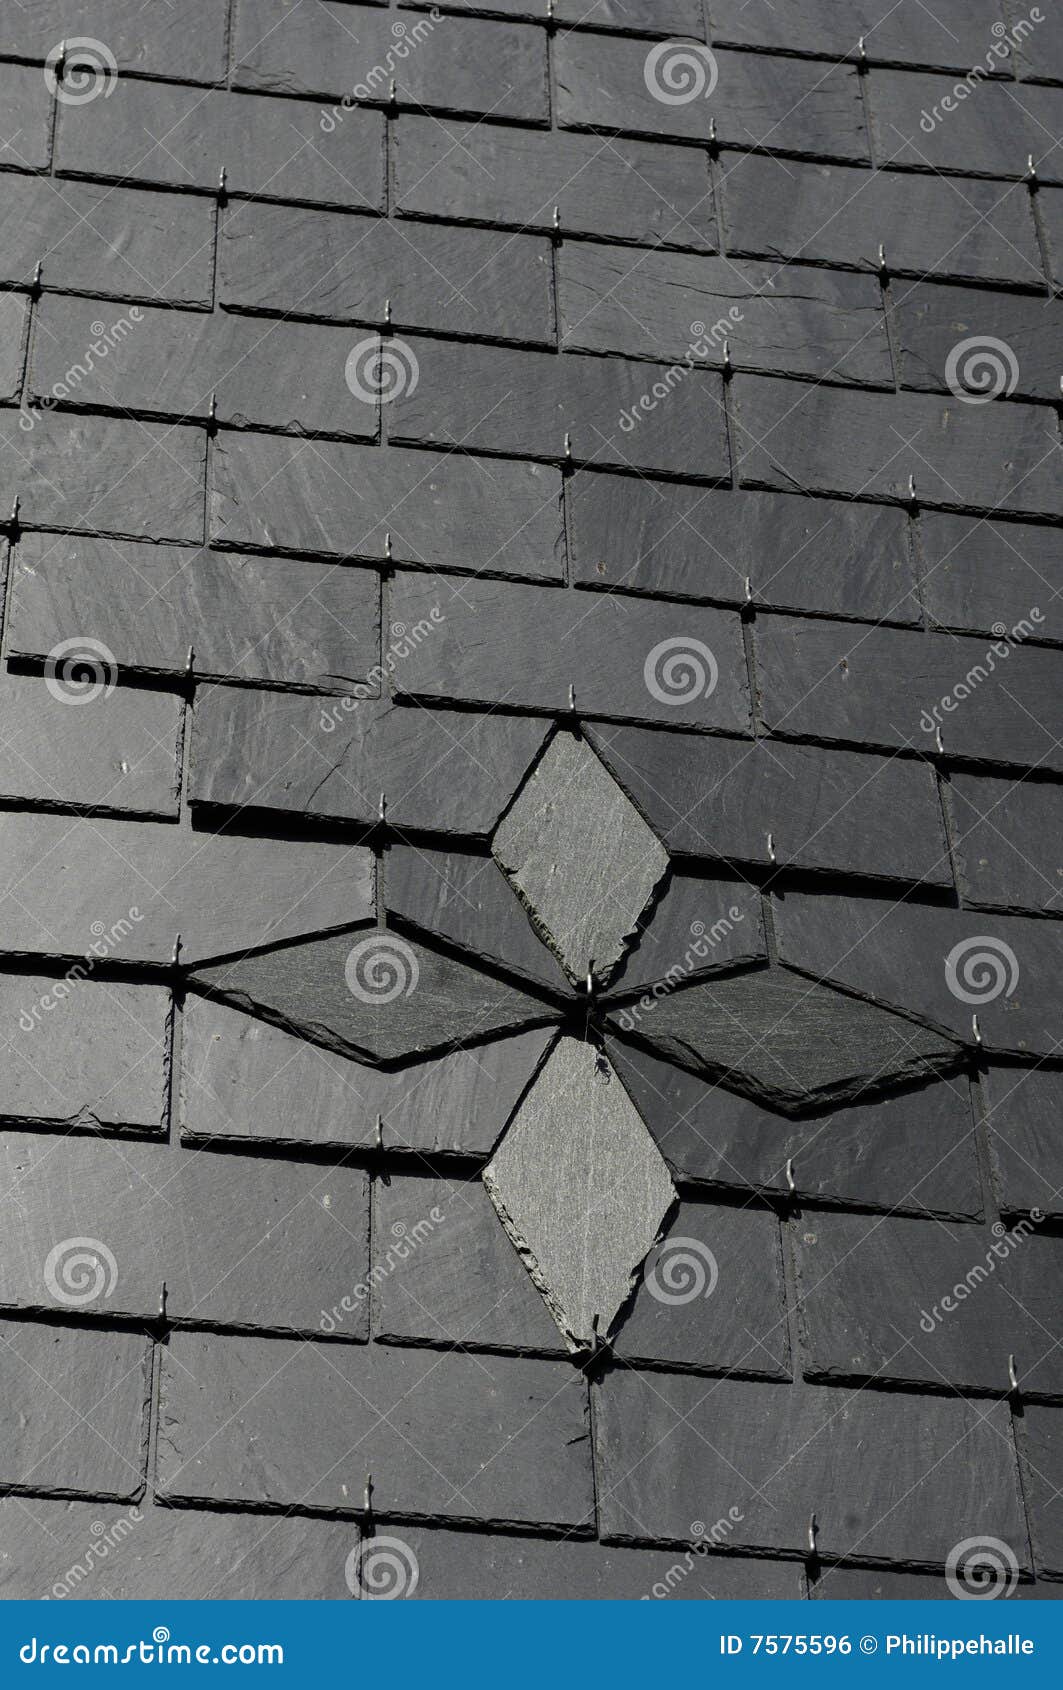 在屋顶的板岩瓦片 库存图片. 图片 包括有 家庭, 防水, 顶层, 布琼布拉, 户外, 屋顶, 板岩, 模式 - 47154317